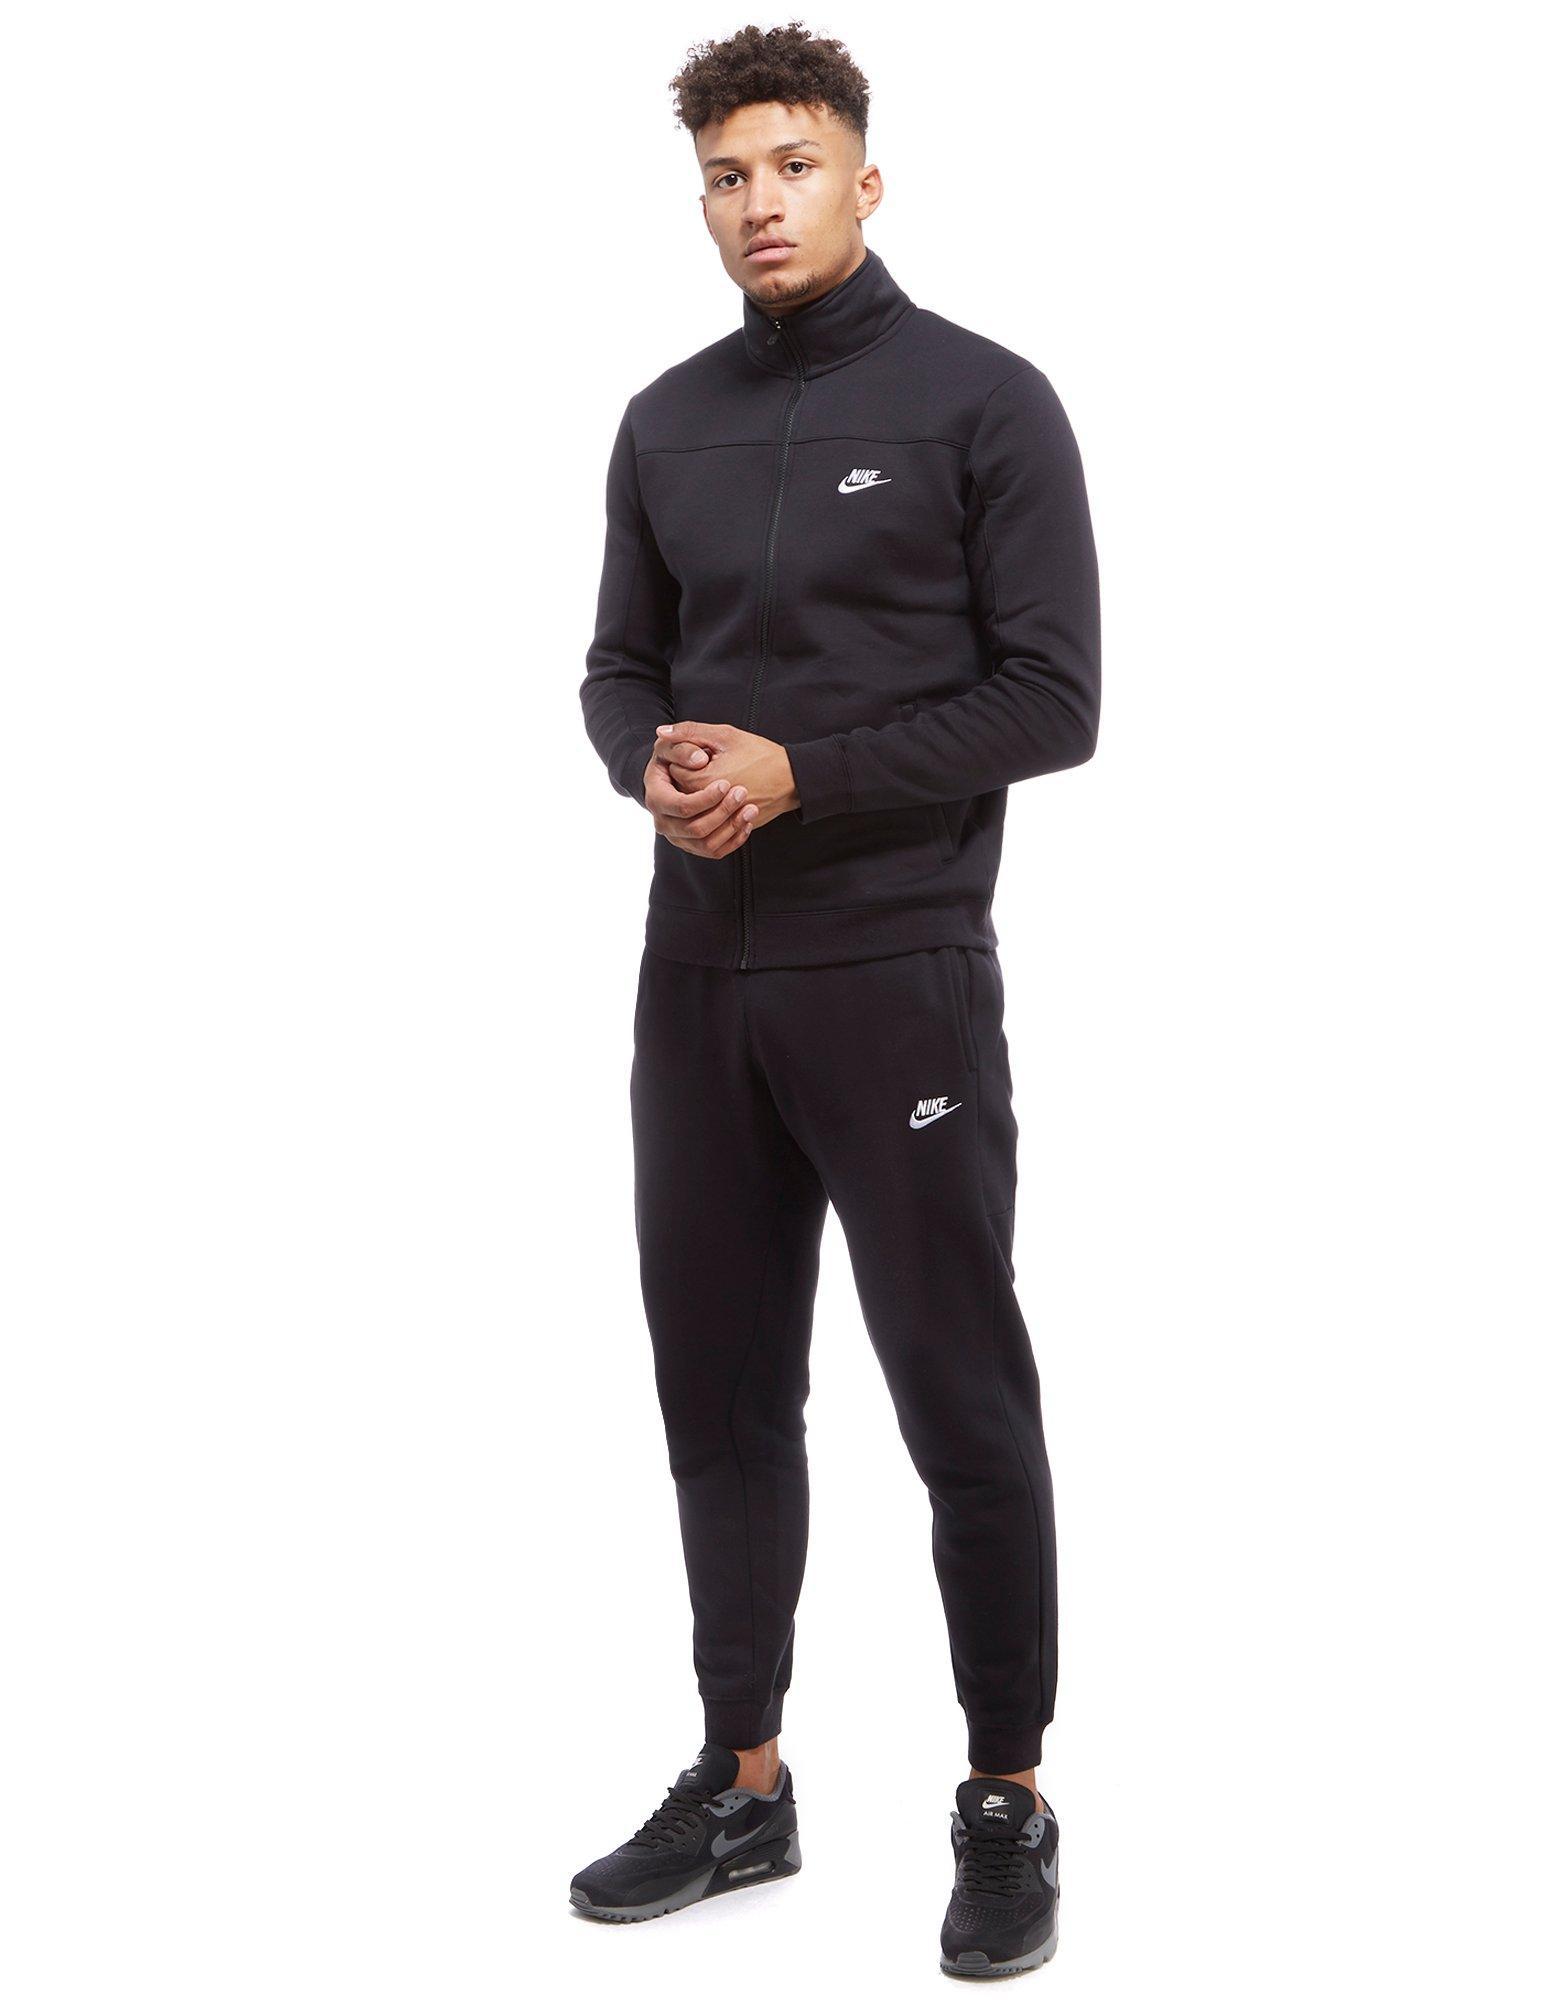 Nike Season 2 Fleece Tracksuit in Black/White (Black) for Men - Lyst